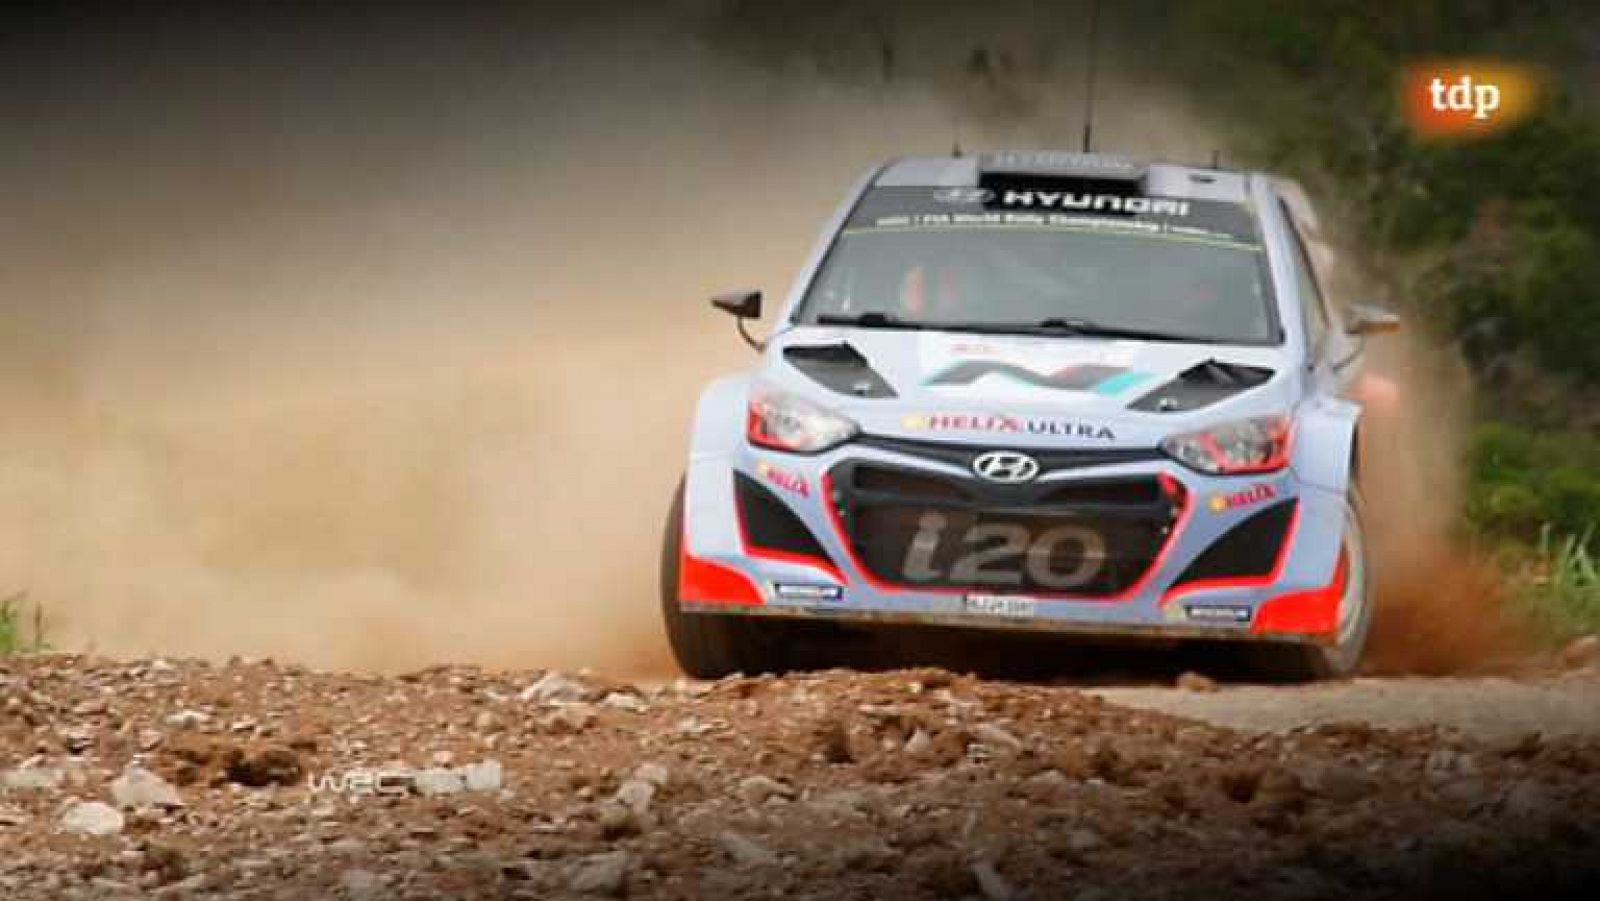 Automovilismo - WRC Campeonato del mundo: Rallye Portugal - resumen 3ª jornada